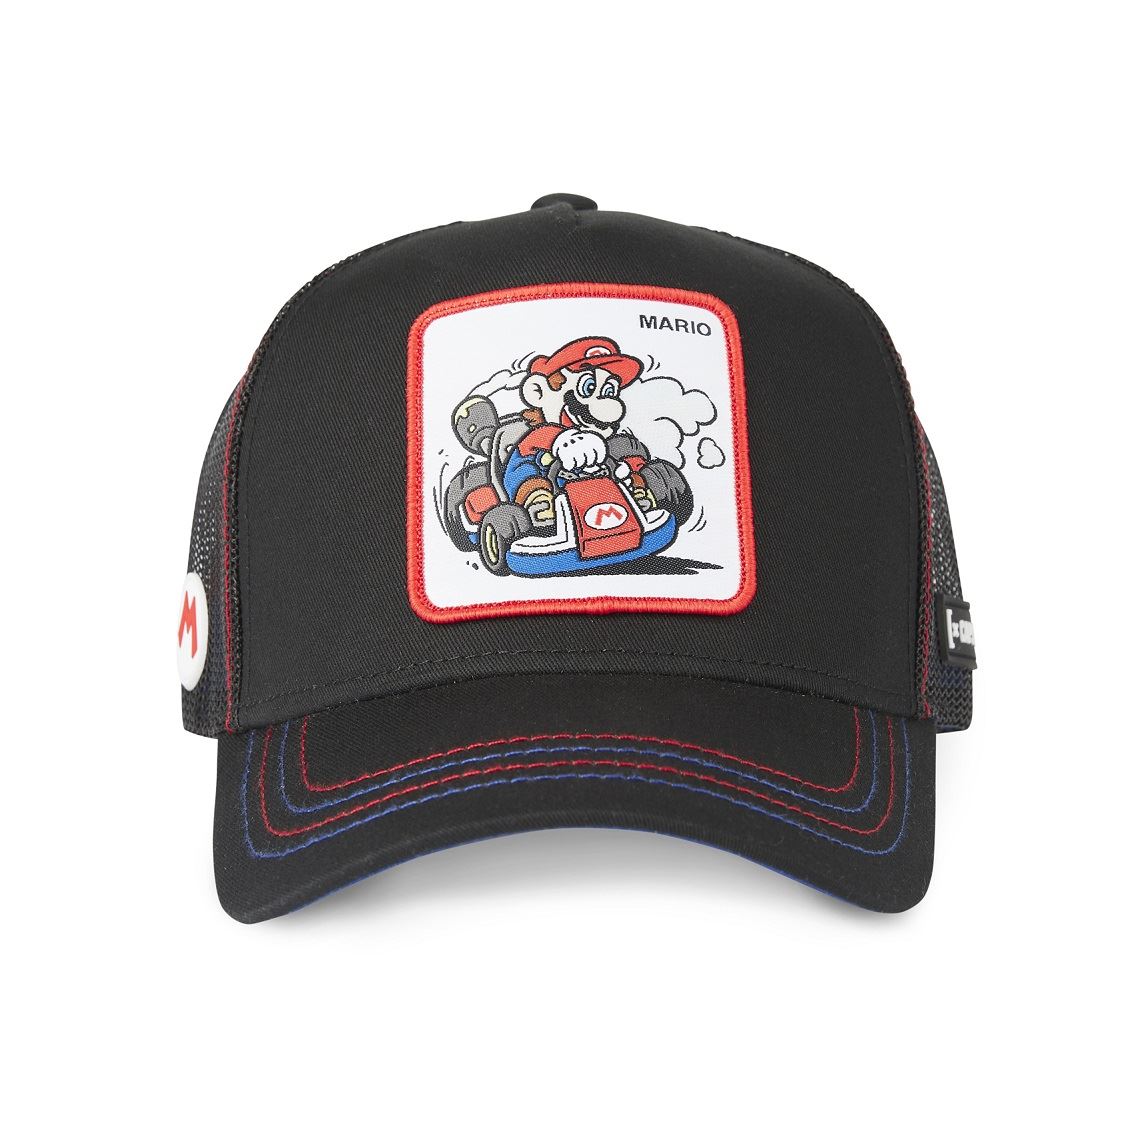 Mario Super Mario Black White Trucker Cap Capslab